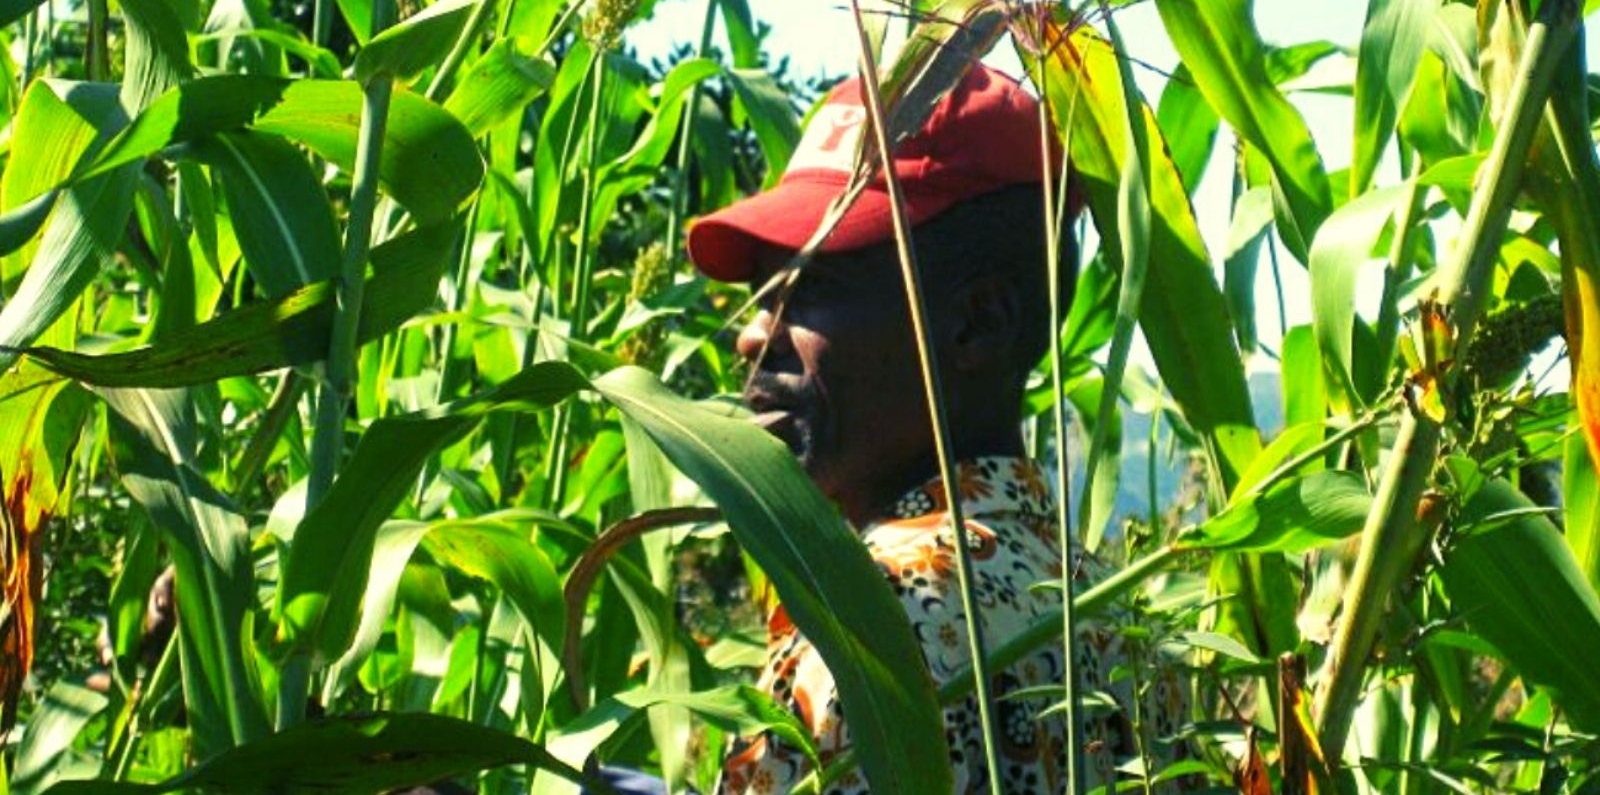 Farmer in Haiti